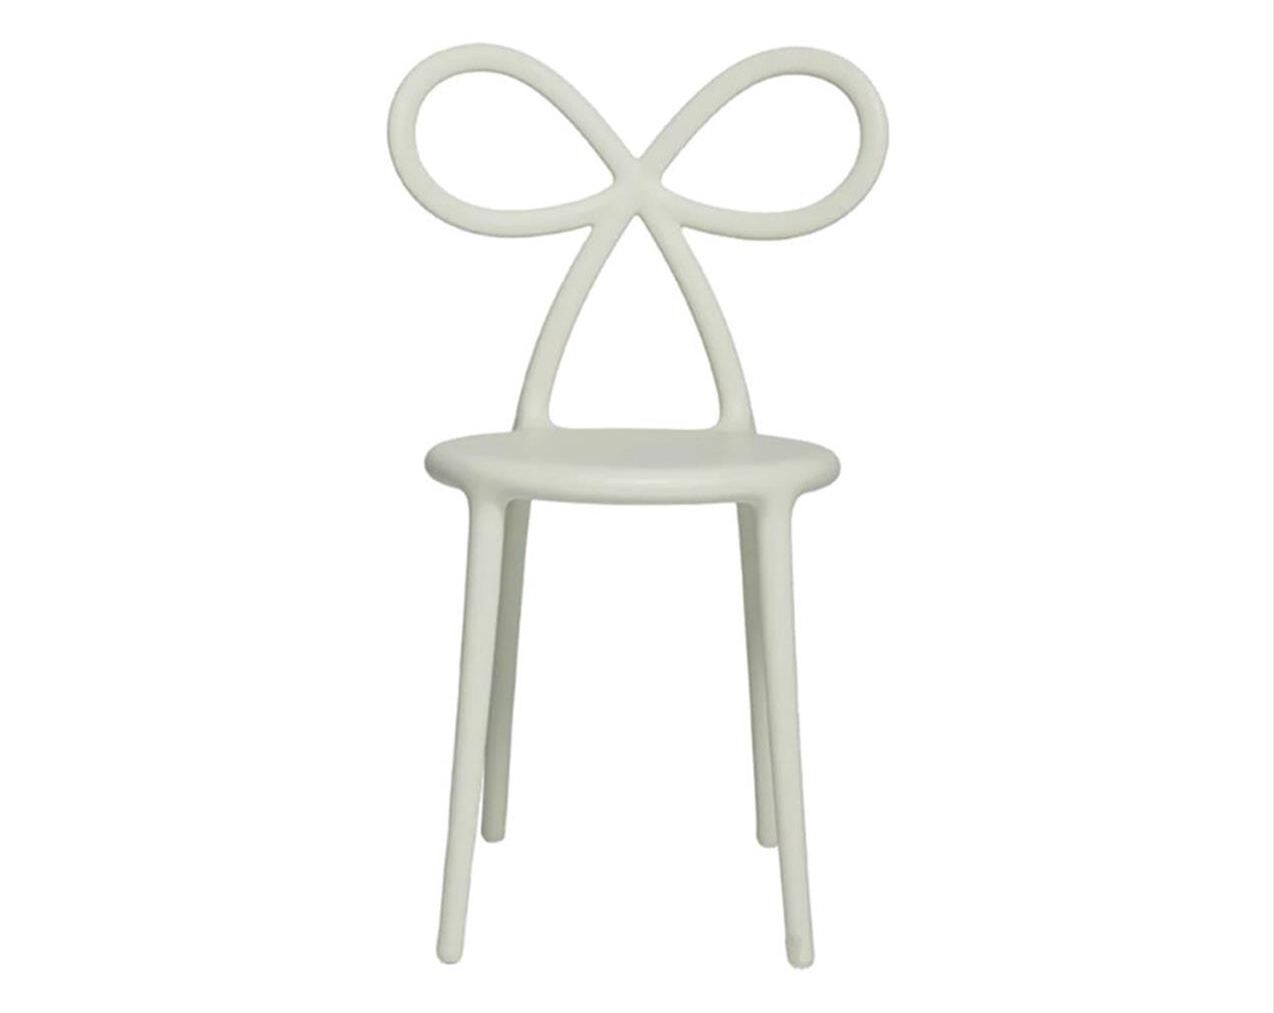 Ribbon-Chair-White